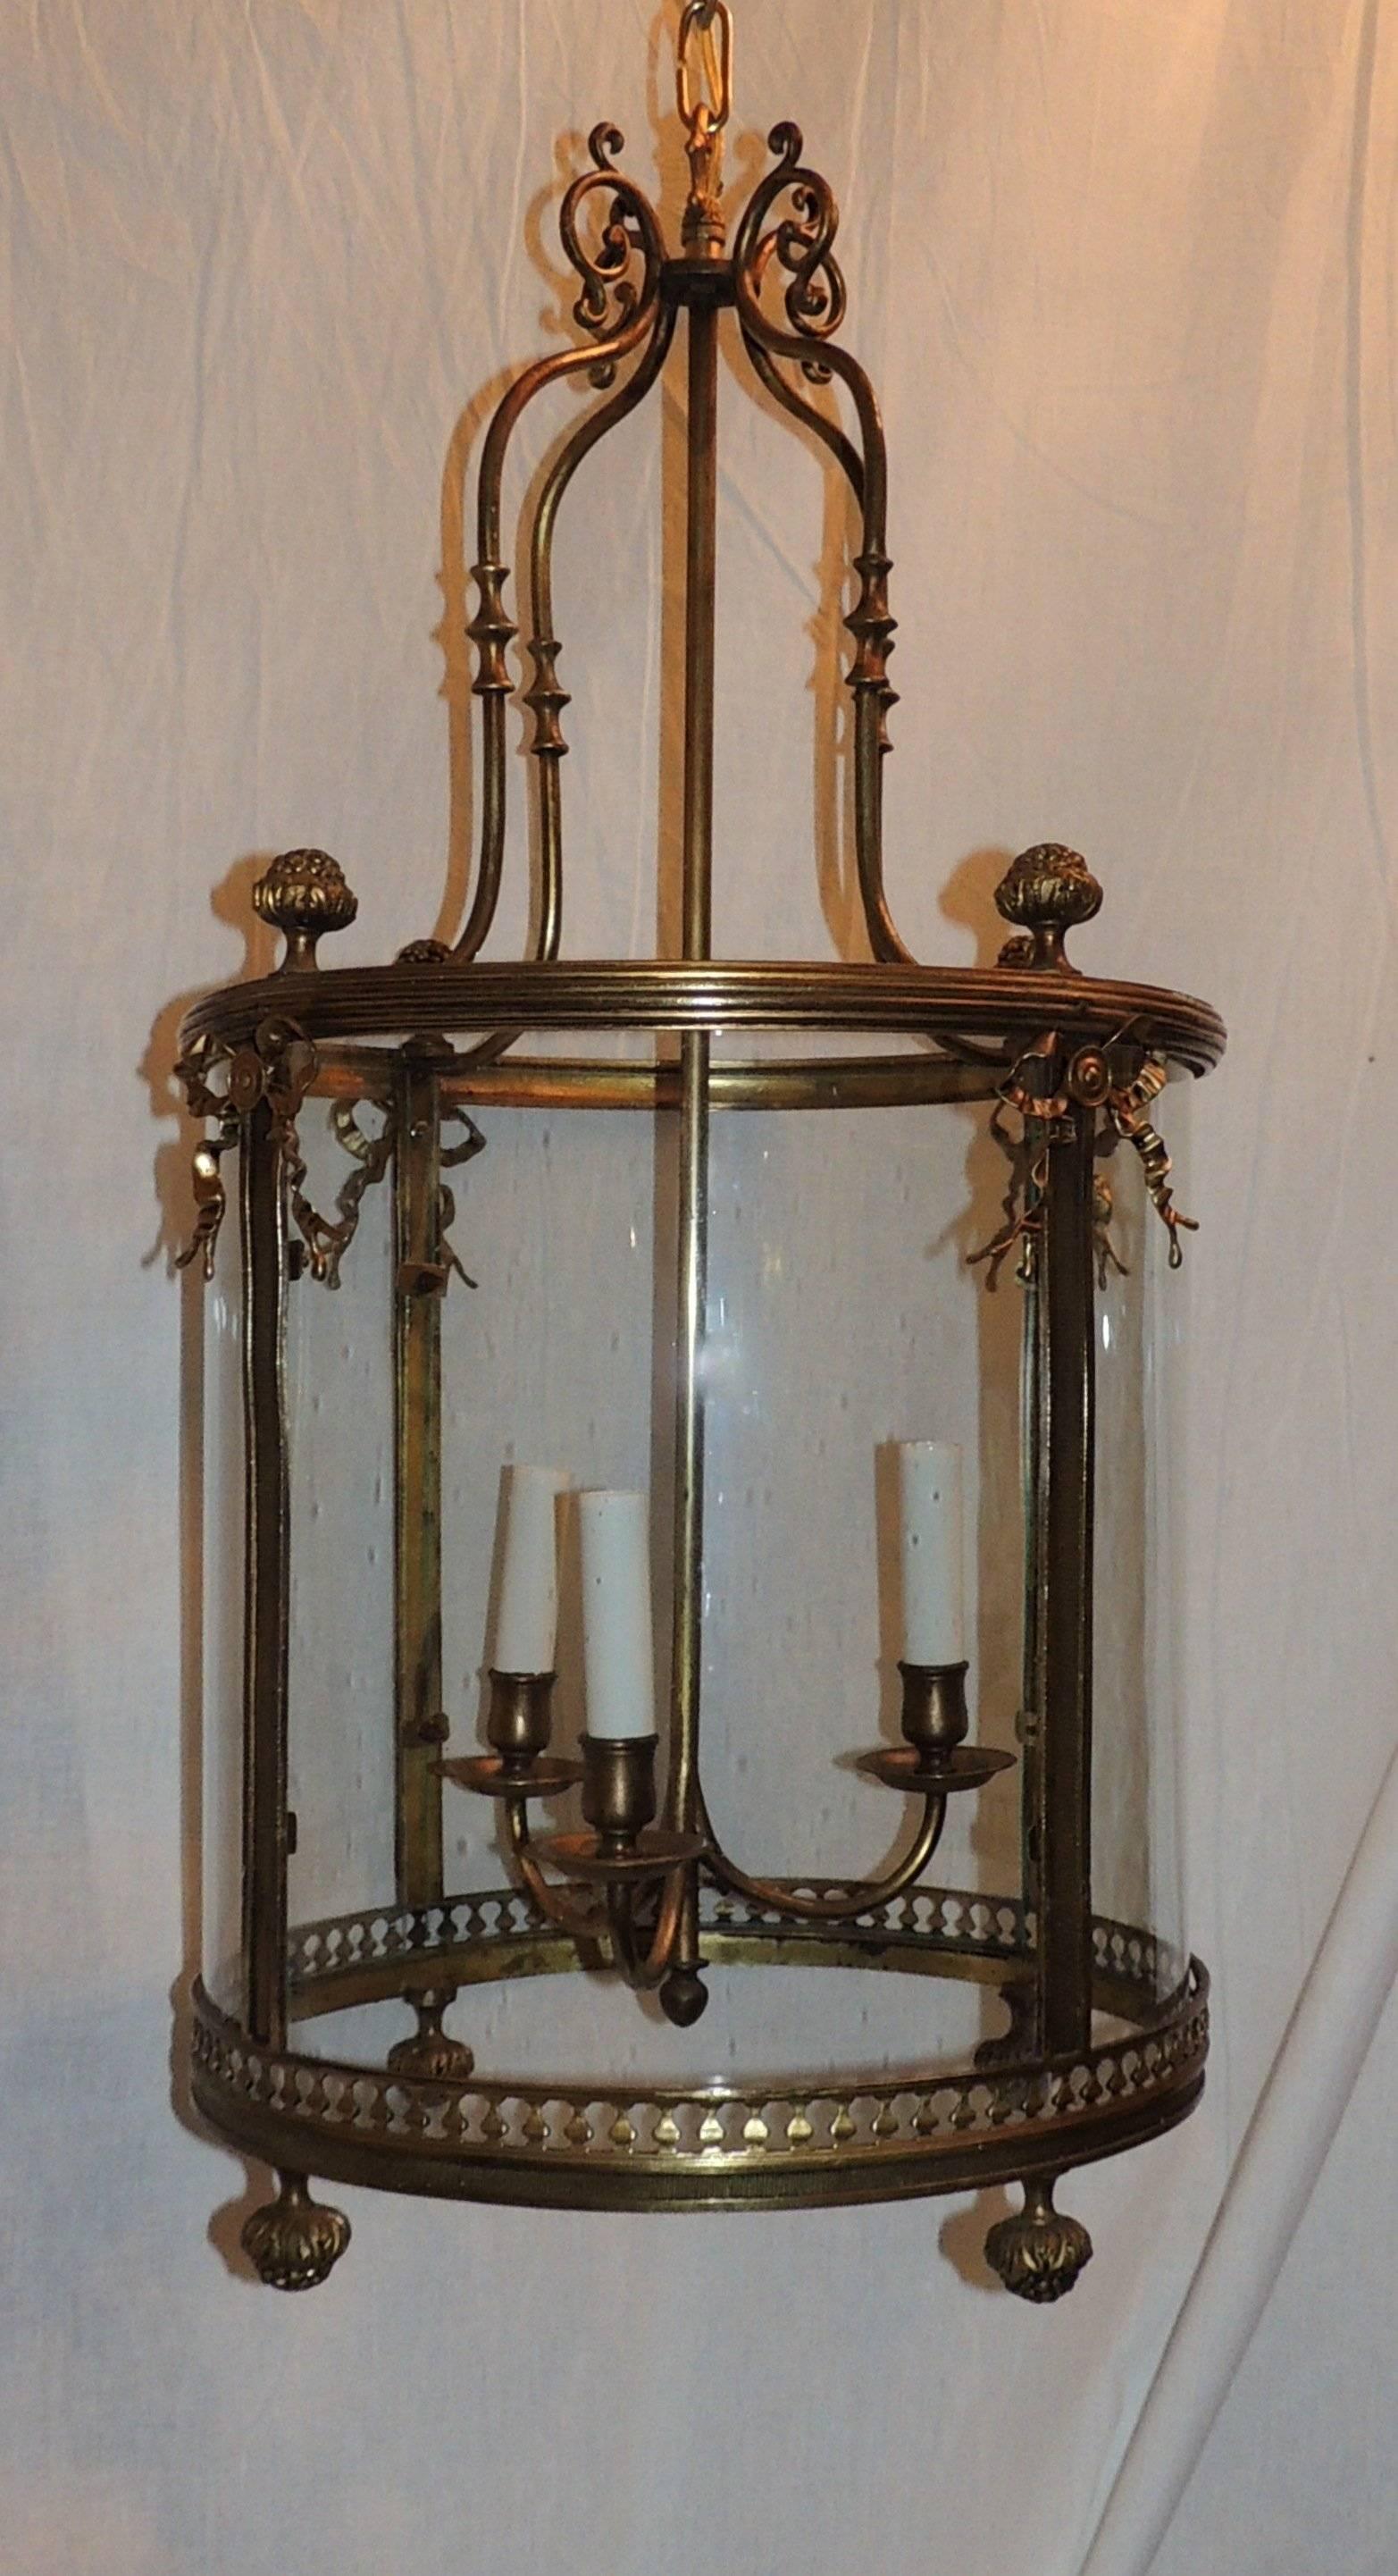 Magnifique lanterne suspendue en bronze gravé avec nœud drapé, avec des découpes autour du fond, des cannelures et des filigranes sur le bord supérieur et des nœuds de ruban sur les panneaux latéraux.

Mesures : 29